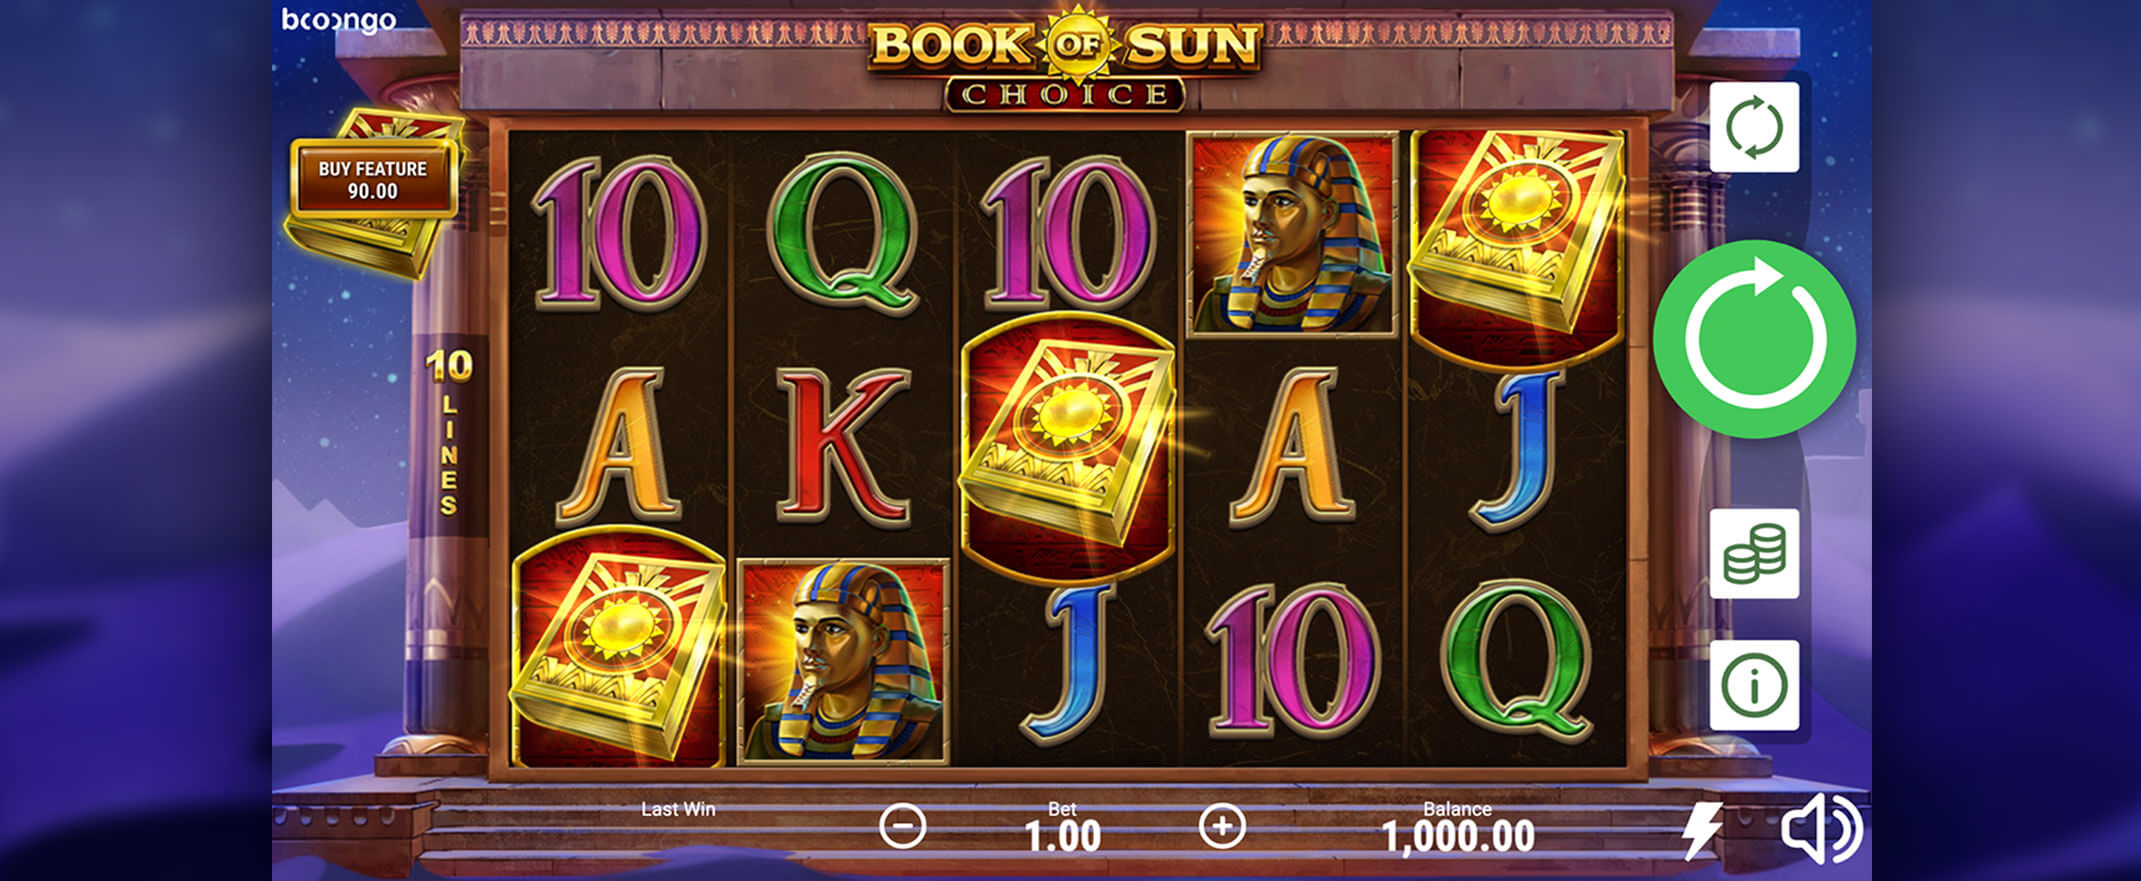 Book of Sun: Choice Spielautomaten Bewertung